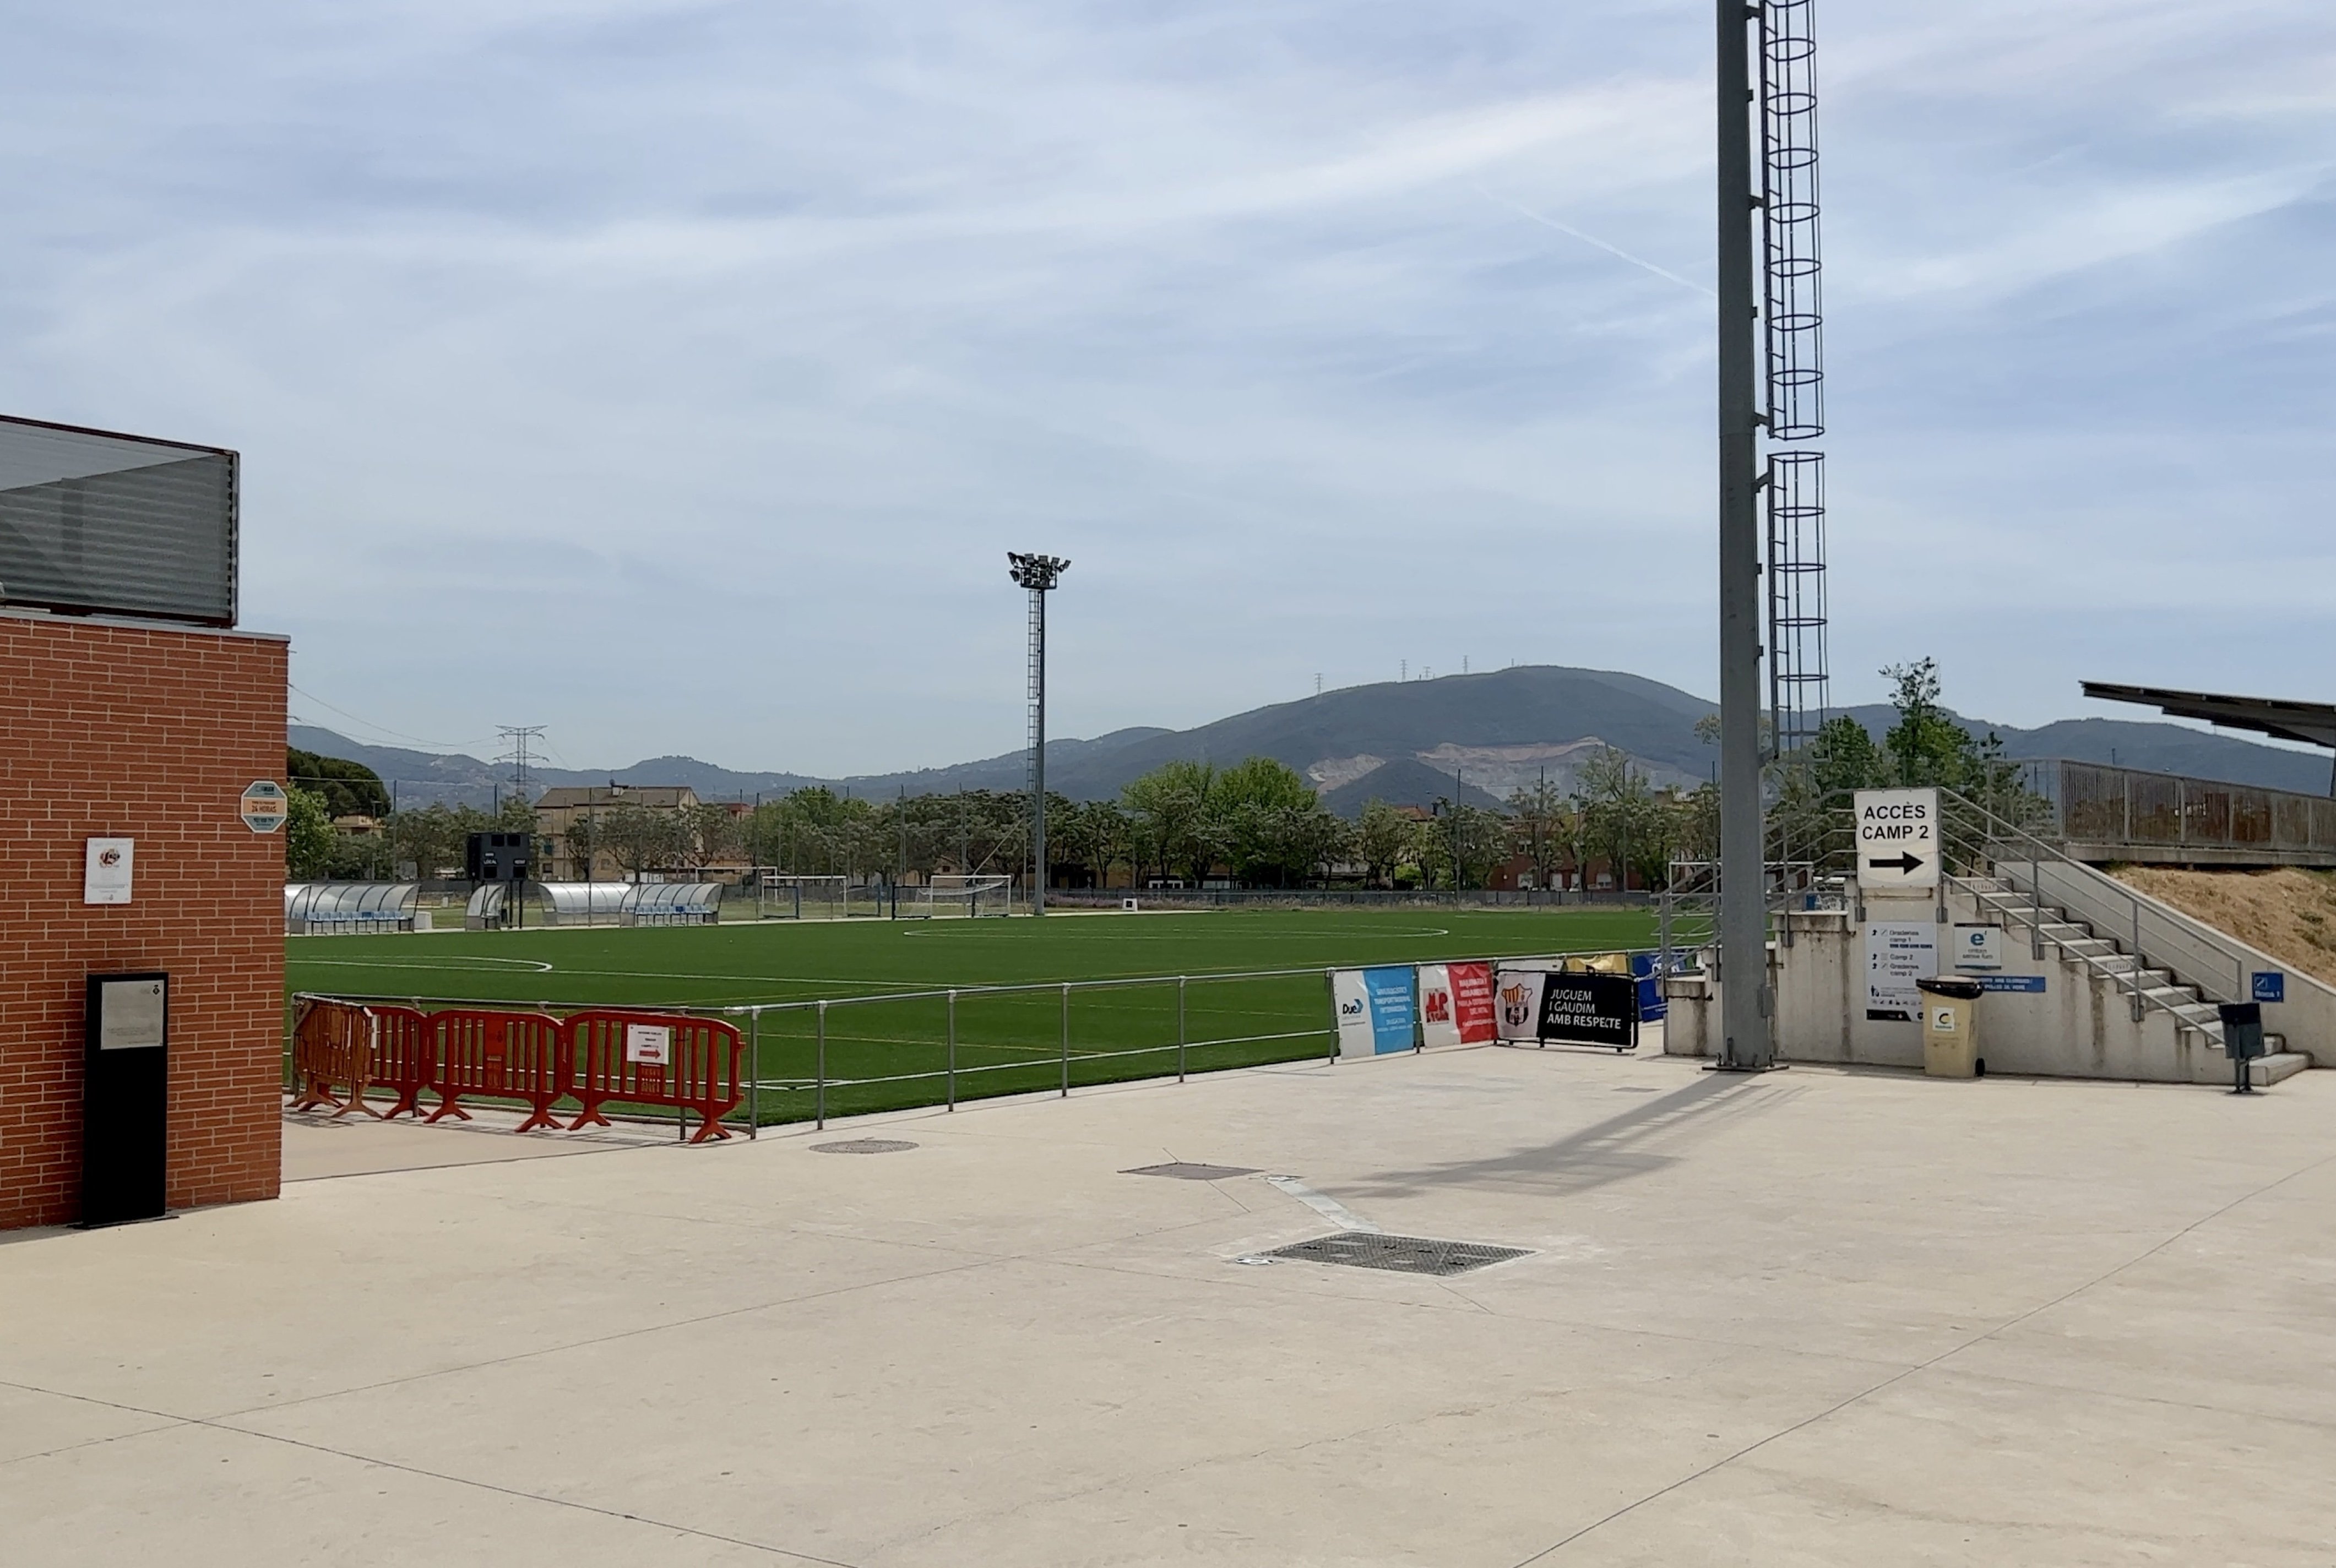 Vista parcial del campo de fútbol municipal donde juega la Unificación Club de Fútbol Santa Perpetua / ALBERT SEGURA, ACN